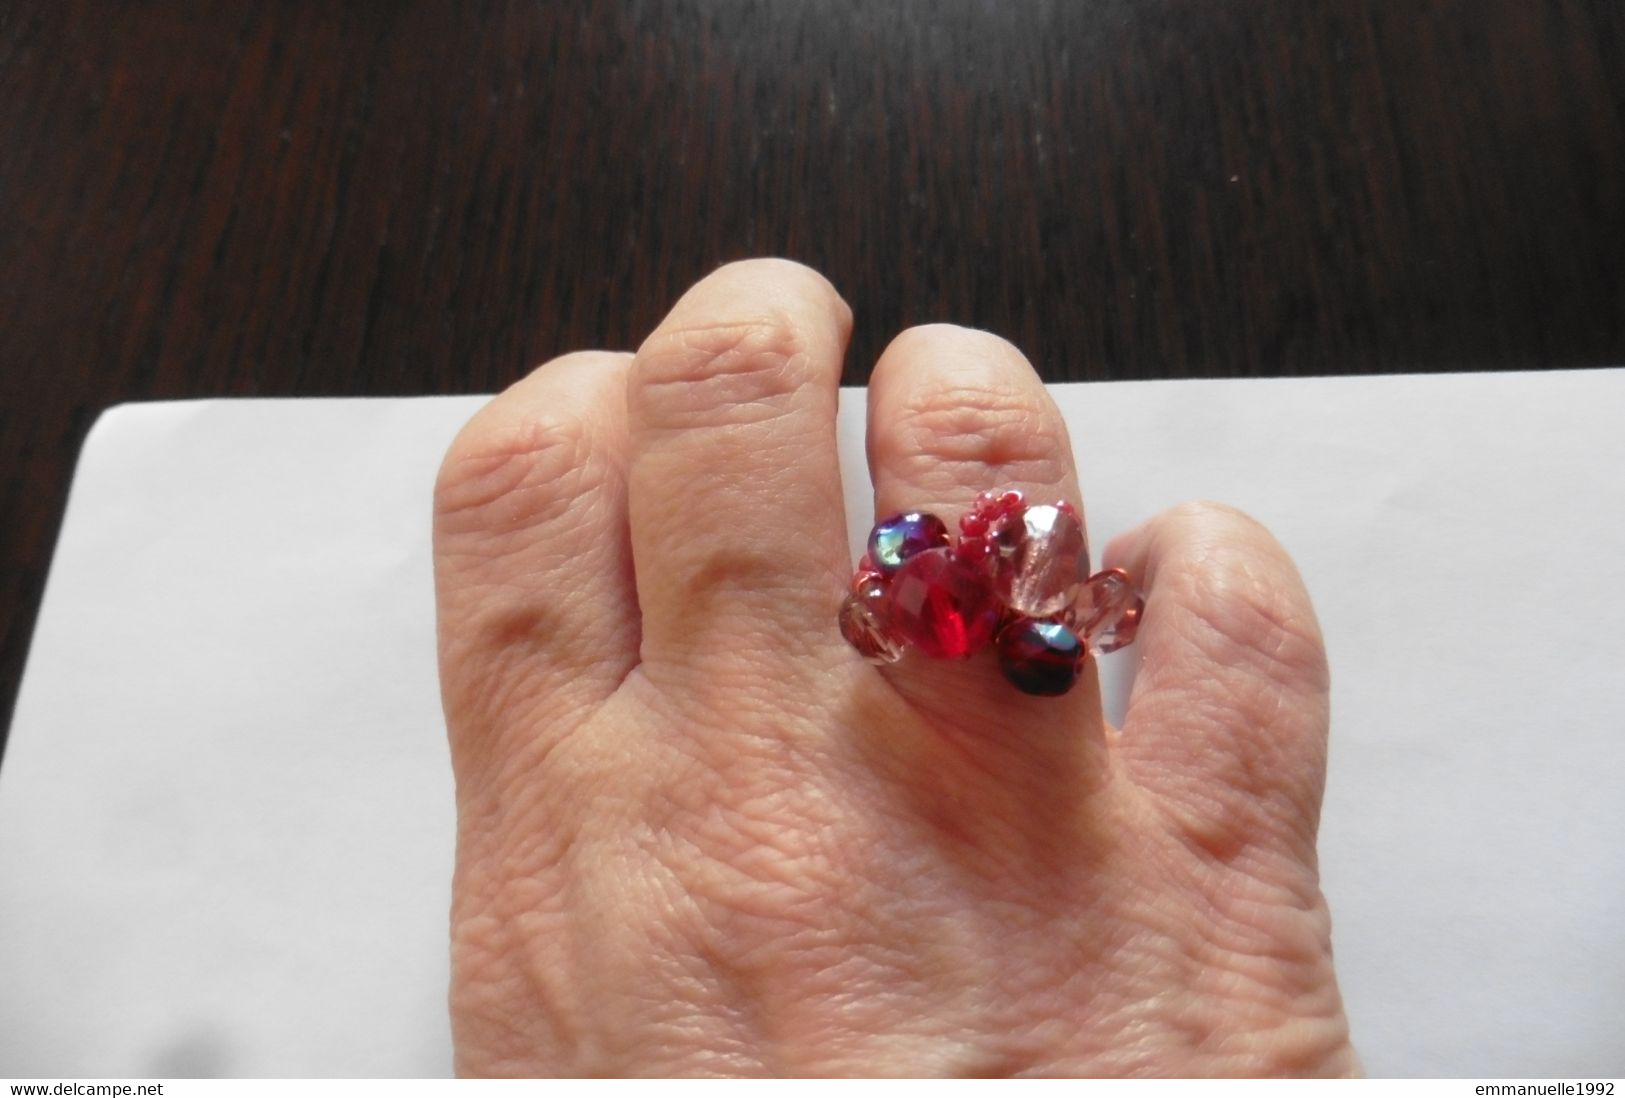 Neuf - Bague d'artisan créateur fil cuivré rouge et perles rocaille et cristaux rose rouge bordeaux irisé T53-54